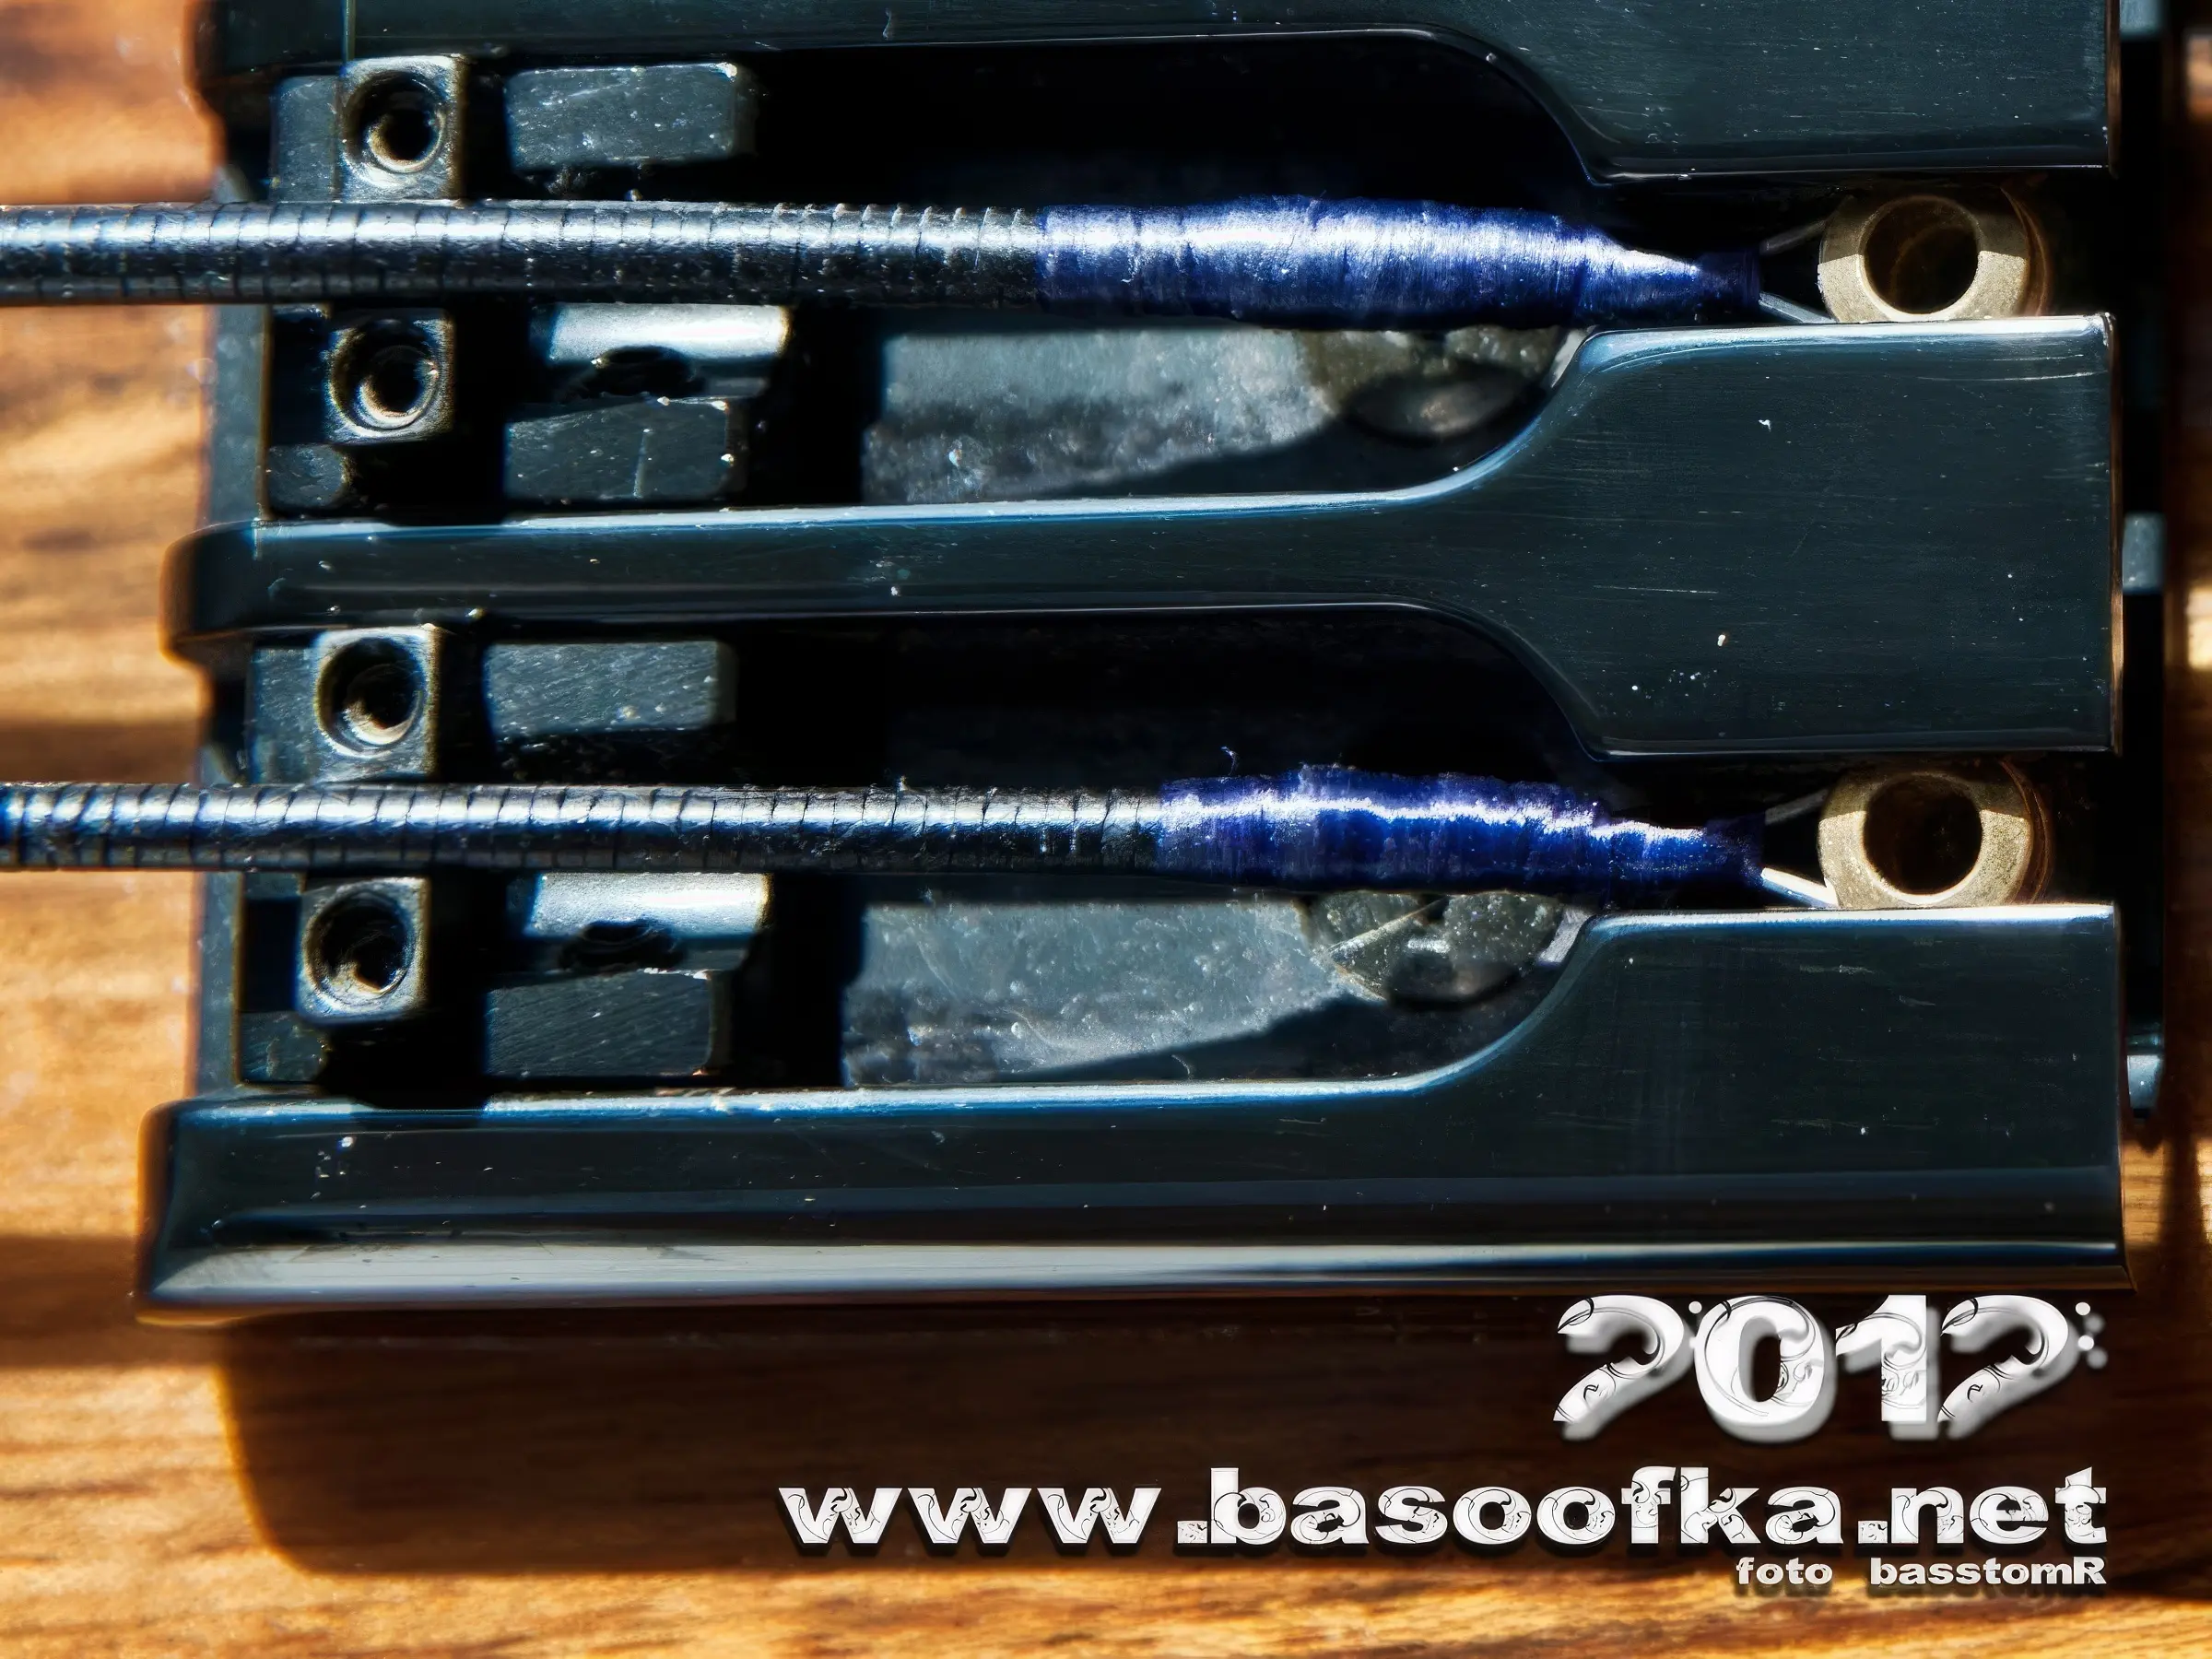 bass basoofka 2012